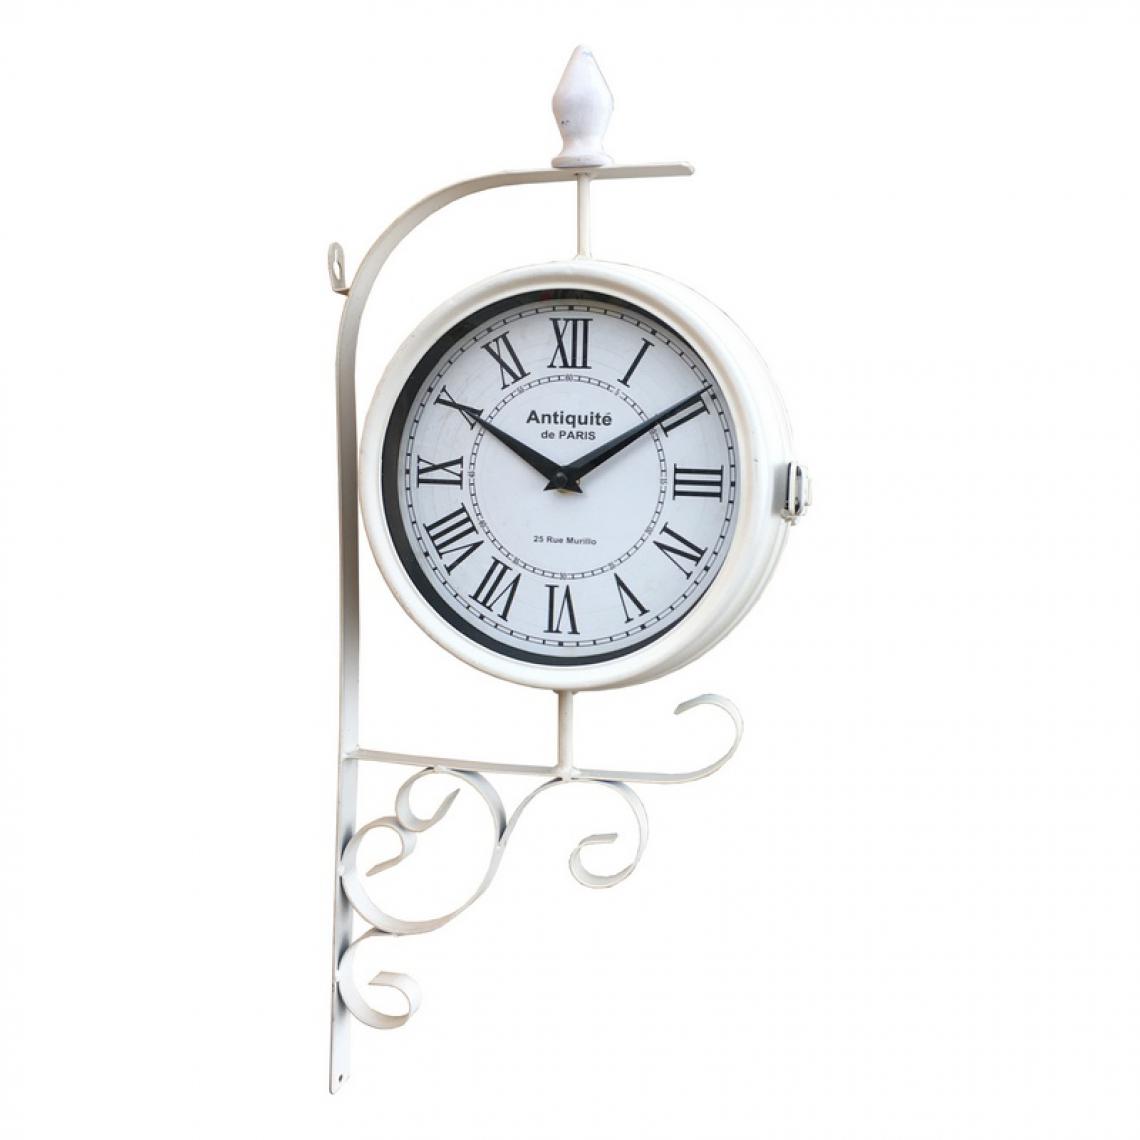 L'Originale Deco - Horloge Double Face Murale Horloge de Gare Métal Fer Blanc 54 cm x 25 cm x 10 cm - Horloges, pendules